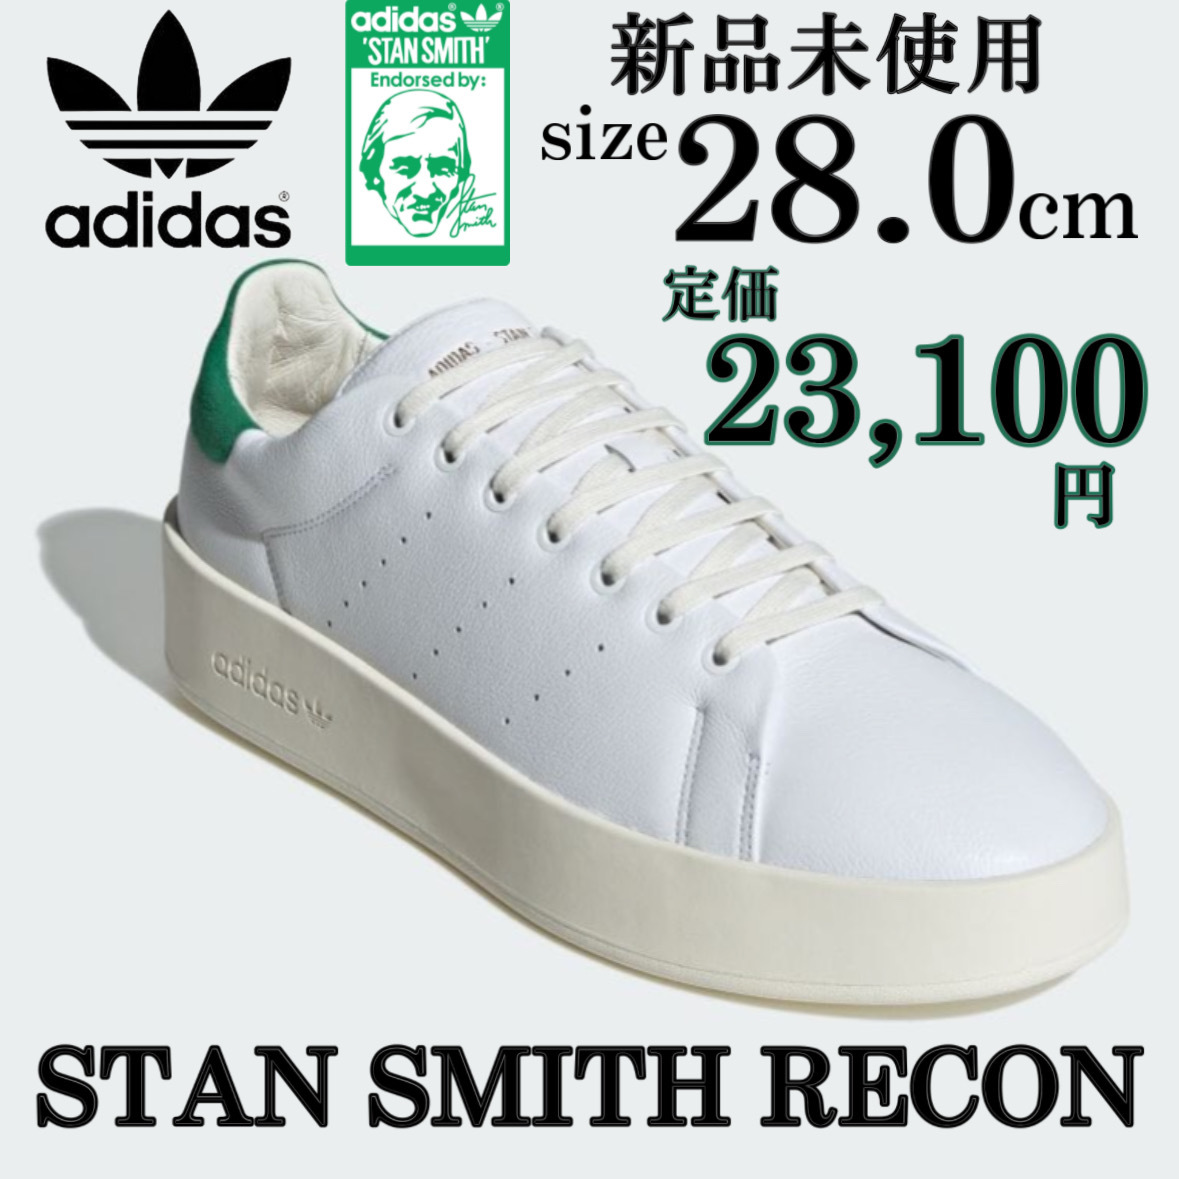 新品 アディダスオリジナルス スタンスミス リコン 28cm adidas originals STANSMITH RECON セレブ 高級 スニーカー シューズ 定番 箱付き